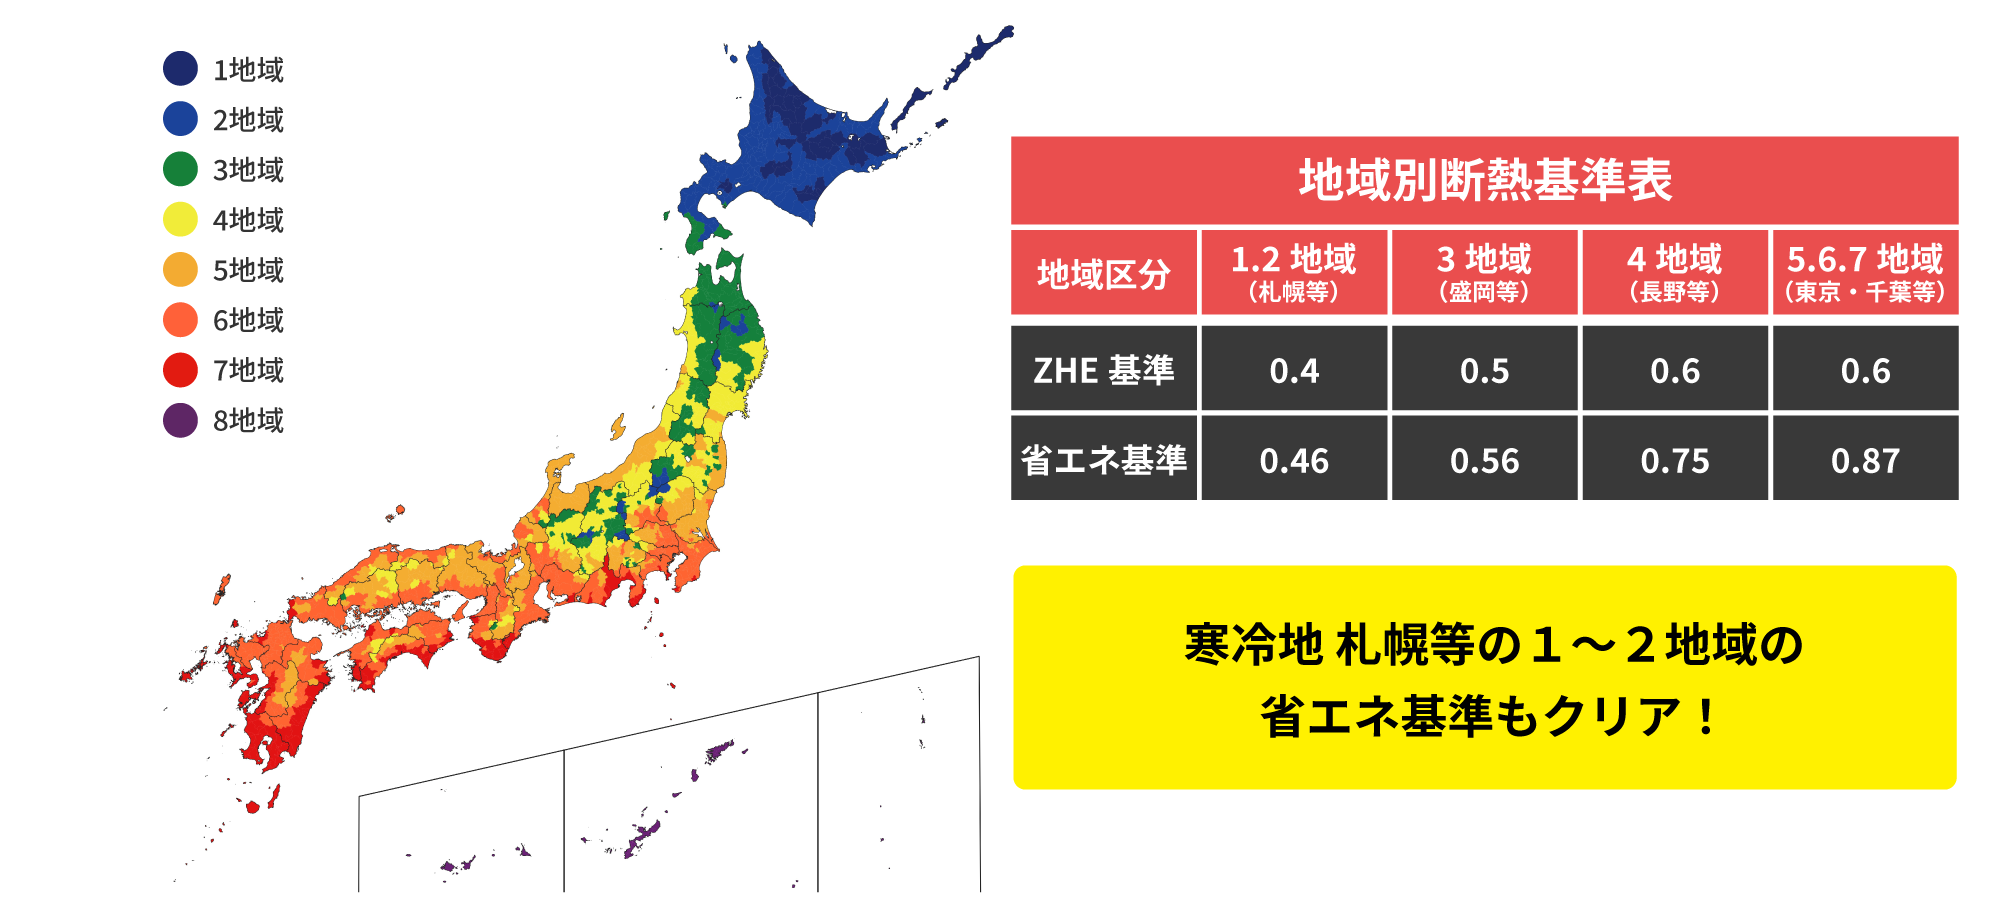 札幌等の寒冷地域省エネ基準と同等レベル